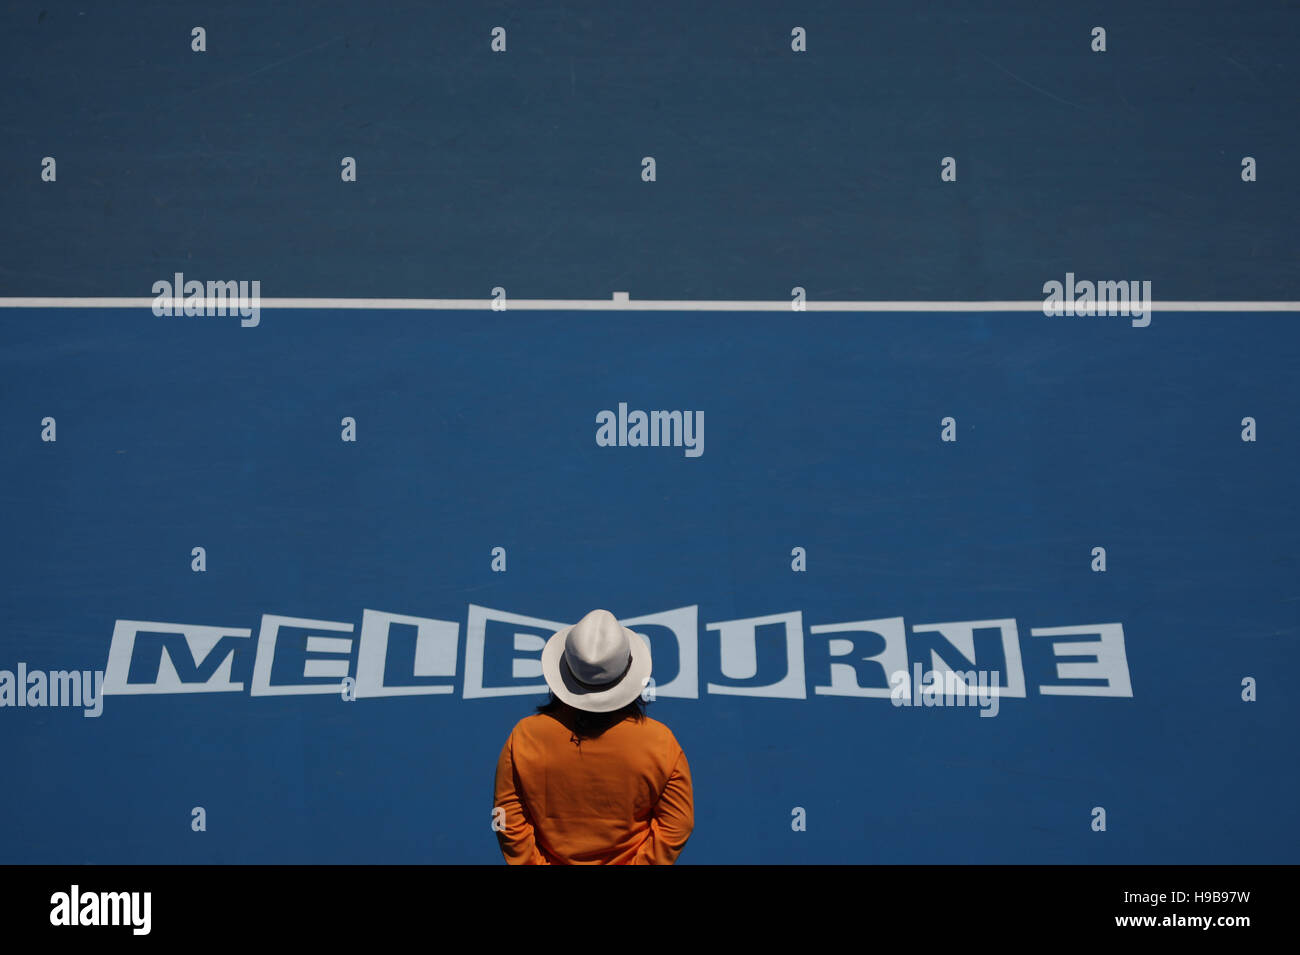 Lettering 'Melbourne', Australian Open 2009, Grand Slam Tournament, Melbourne Park, Melbourne, Australia Stock Photo